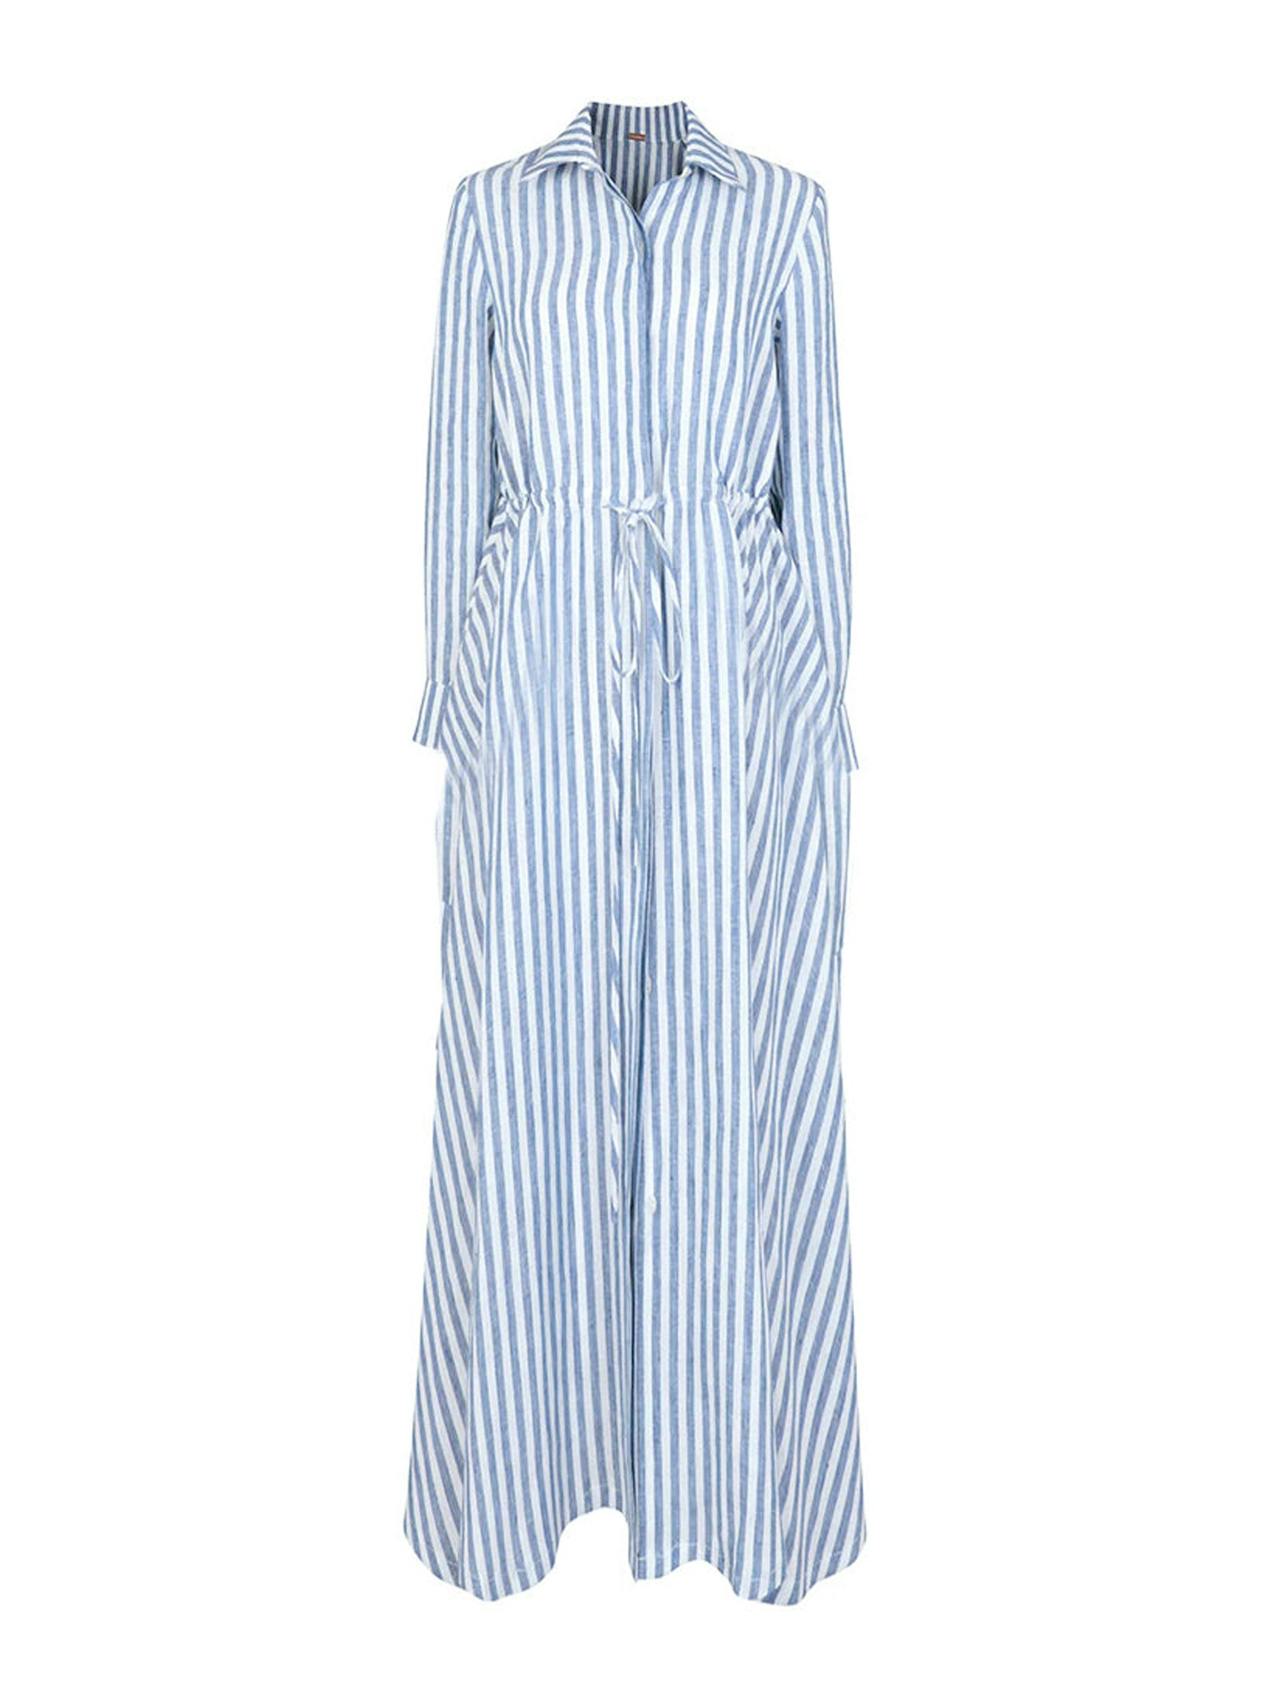 Striped Amalfi long dress